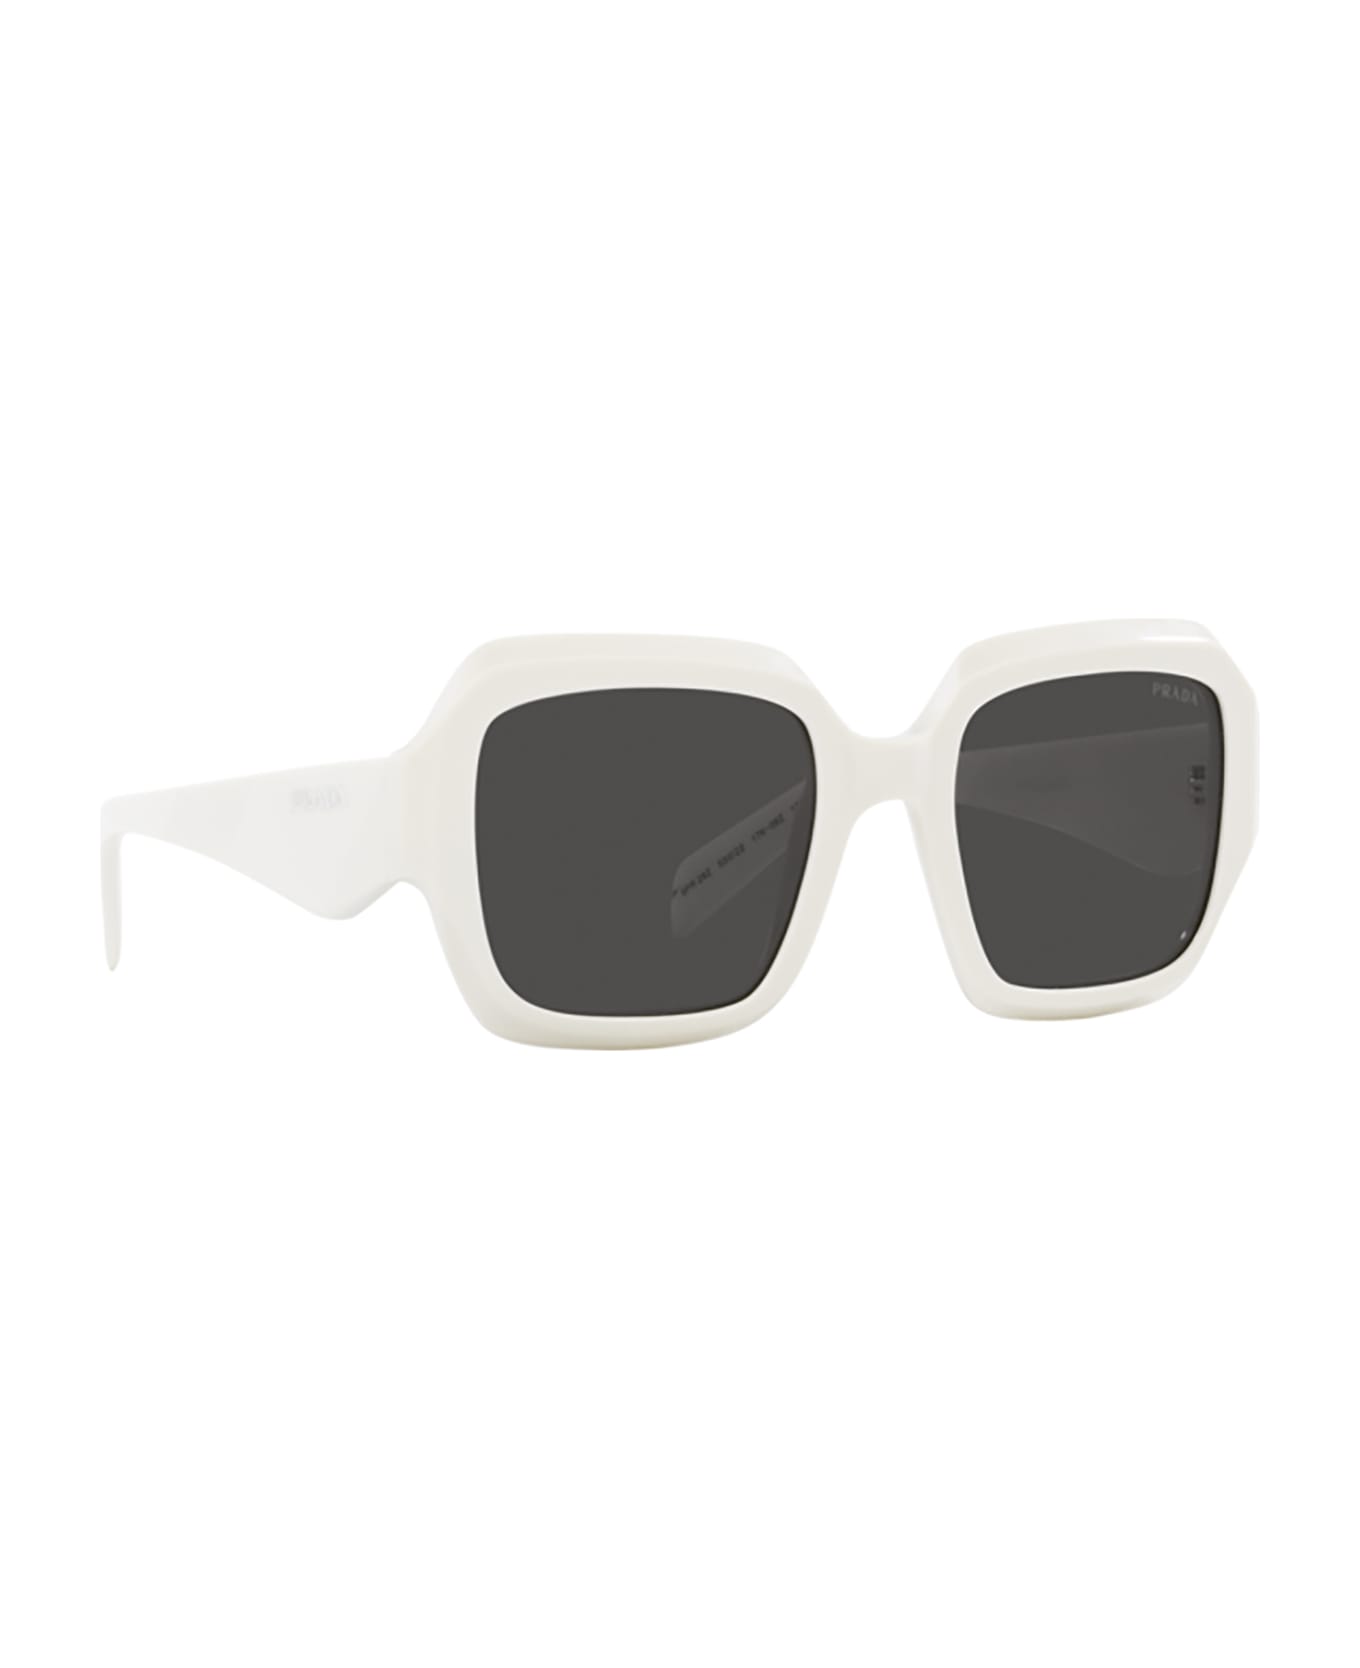 Prada Eyewear Pr 28zs Black / Talc Sunglasses - Black / Talc